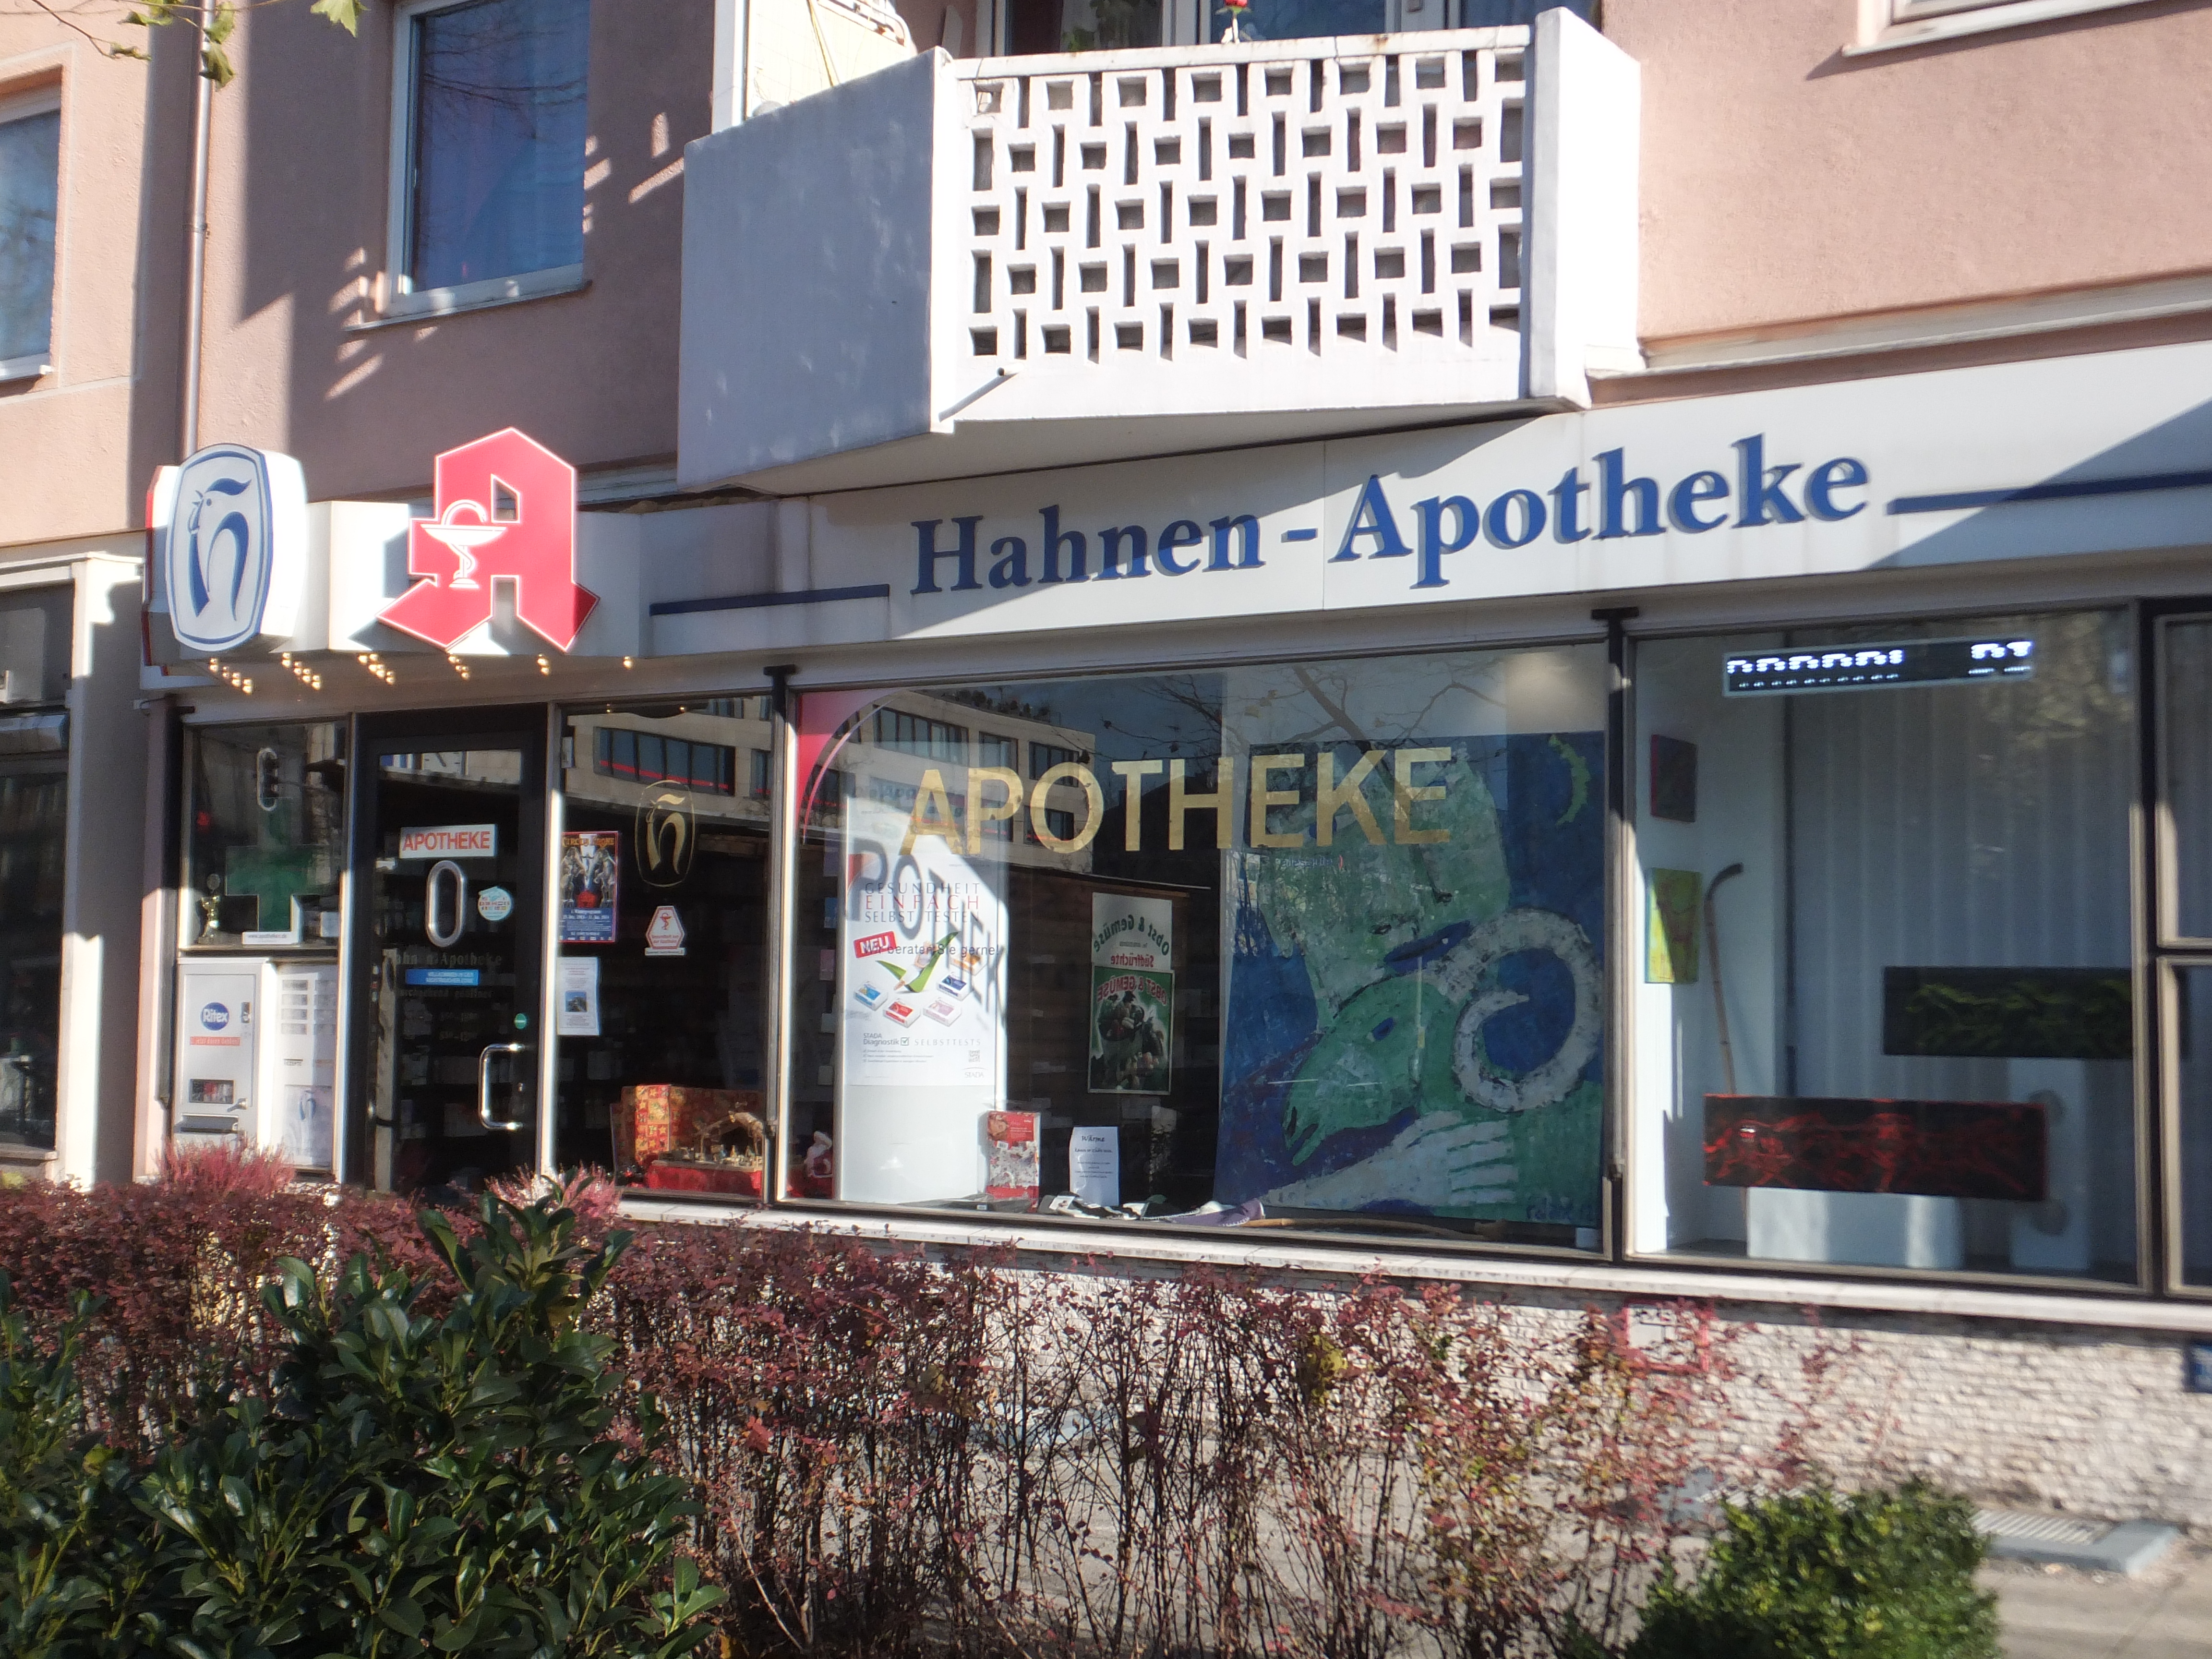 Bild 1 Hahnen-Apotheke in München